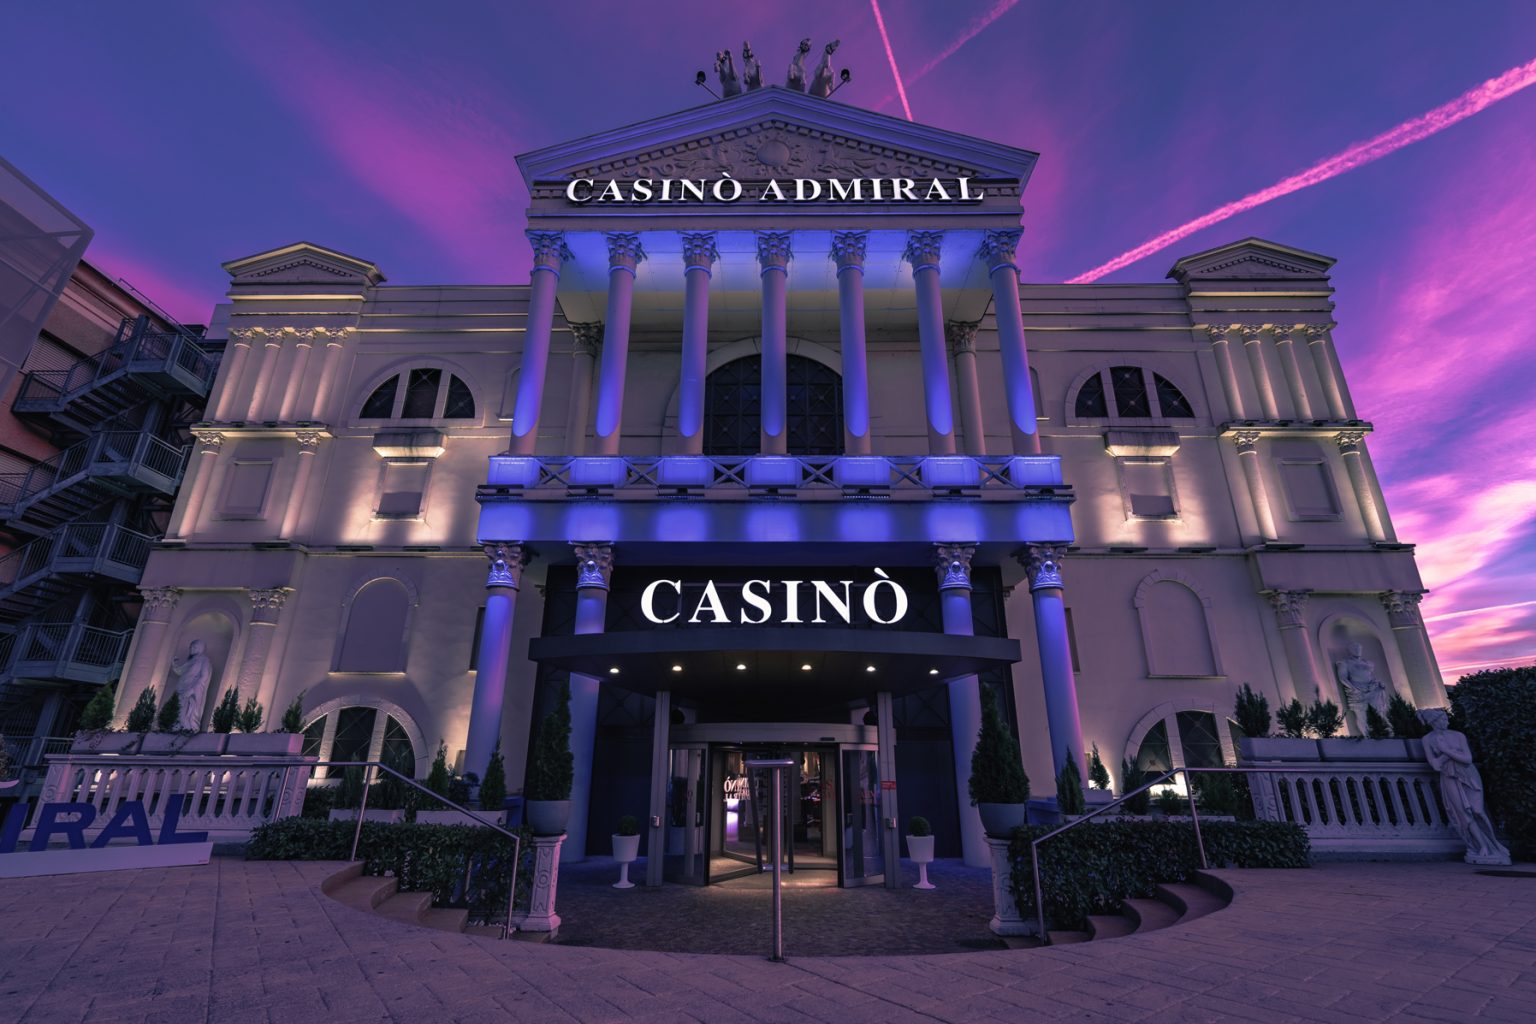 betfair casino